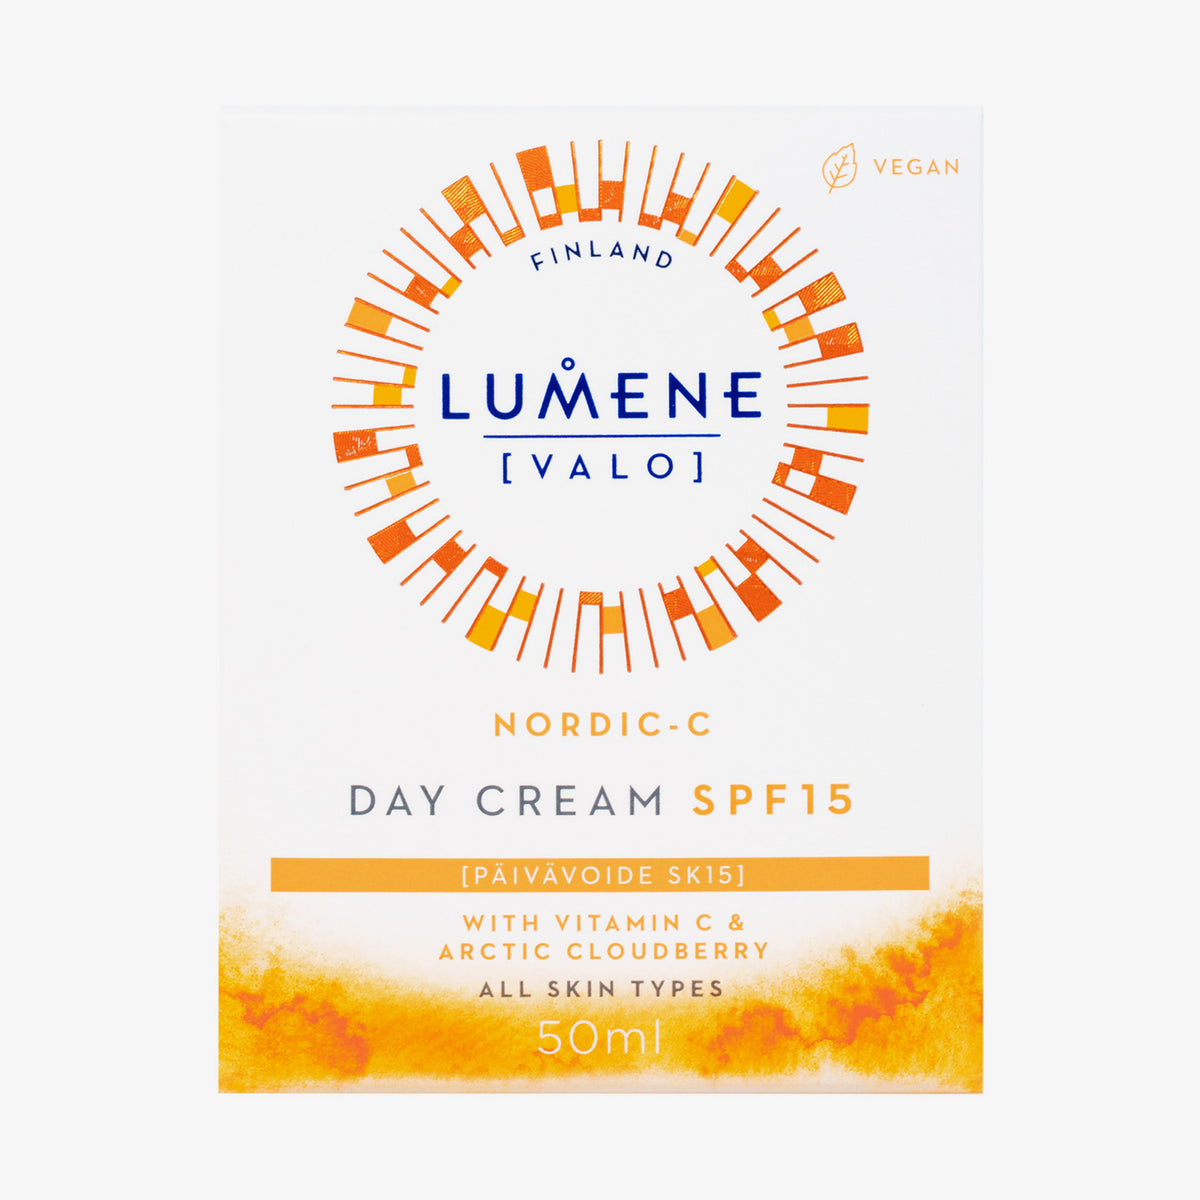 Lumene | NORDIC-C [VALO] Day Cream SPF15